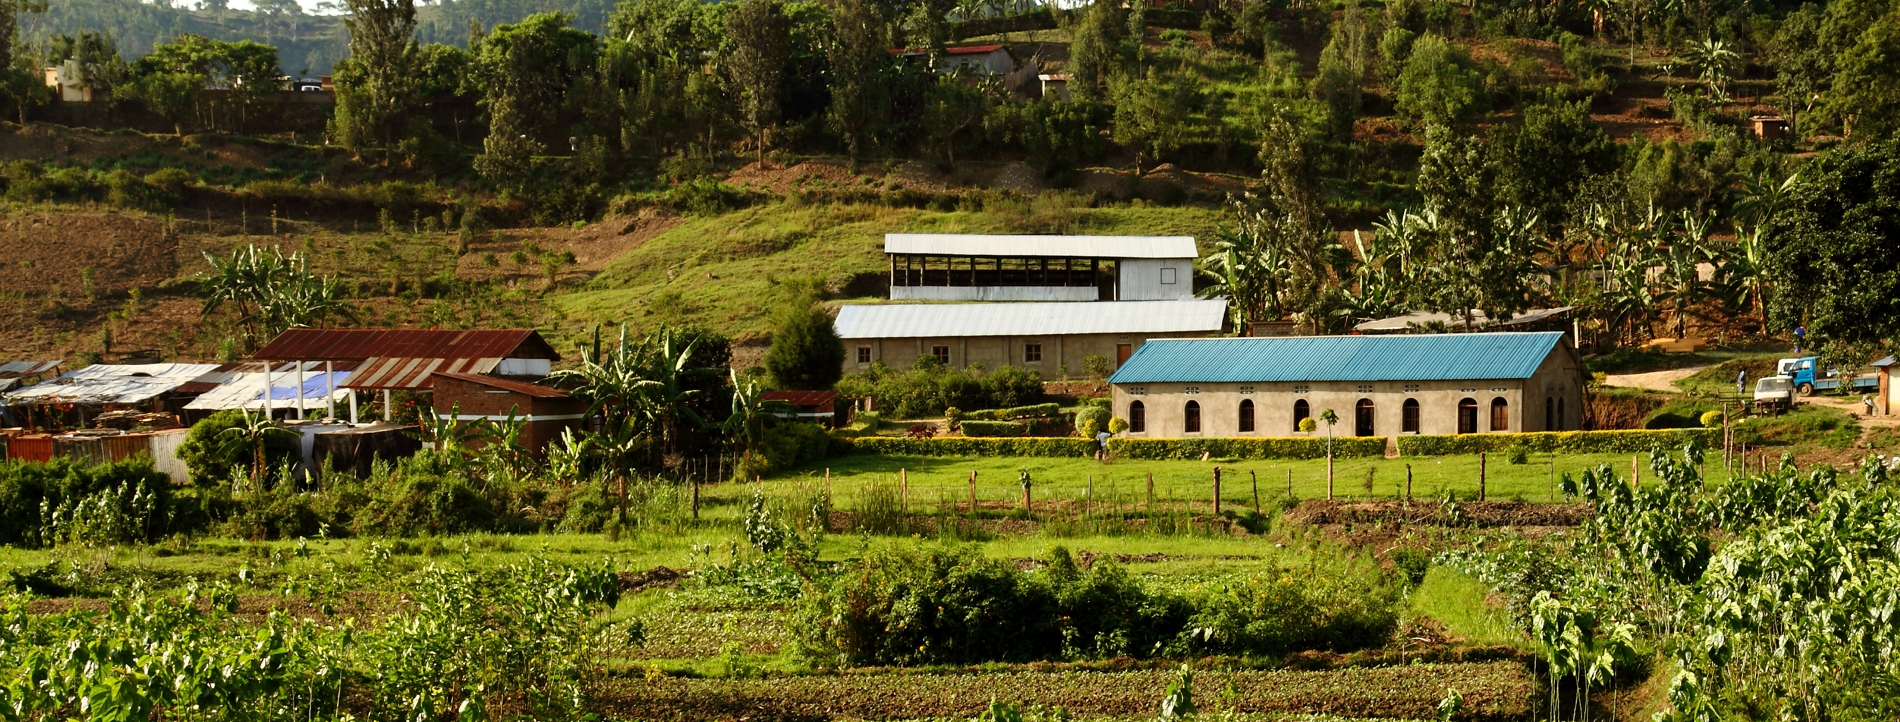 Farm in rwanda